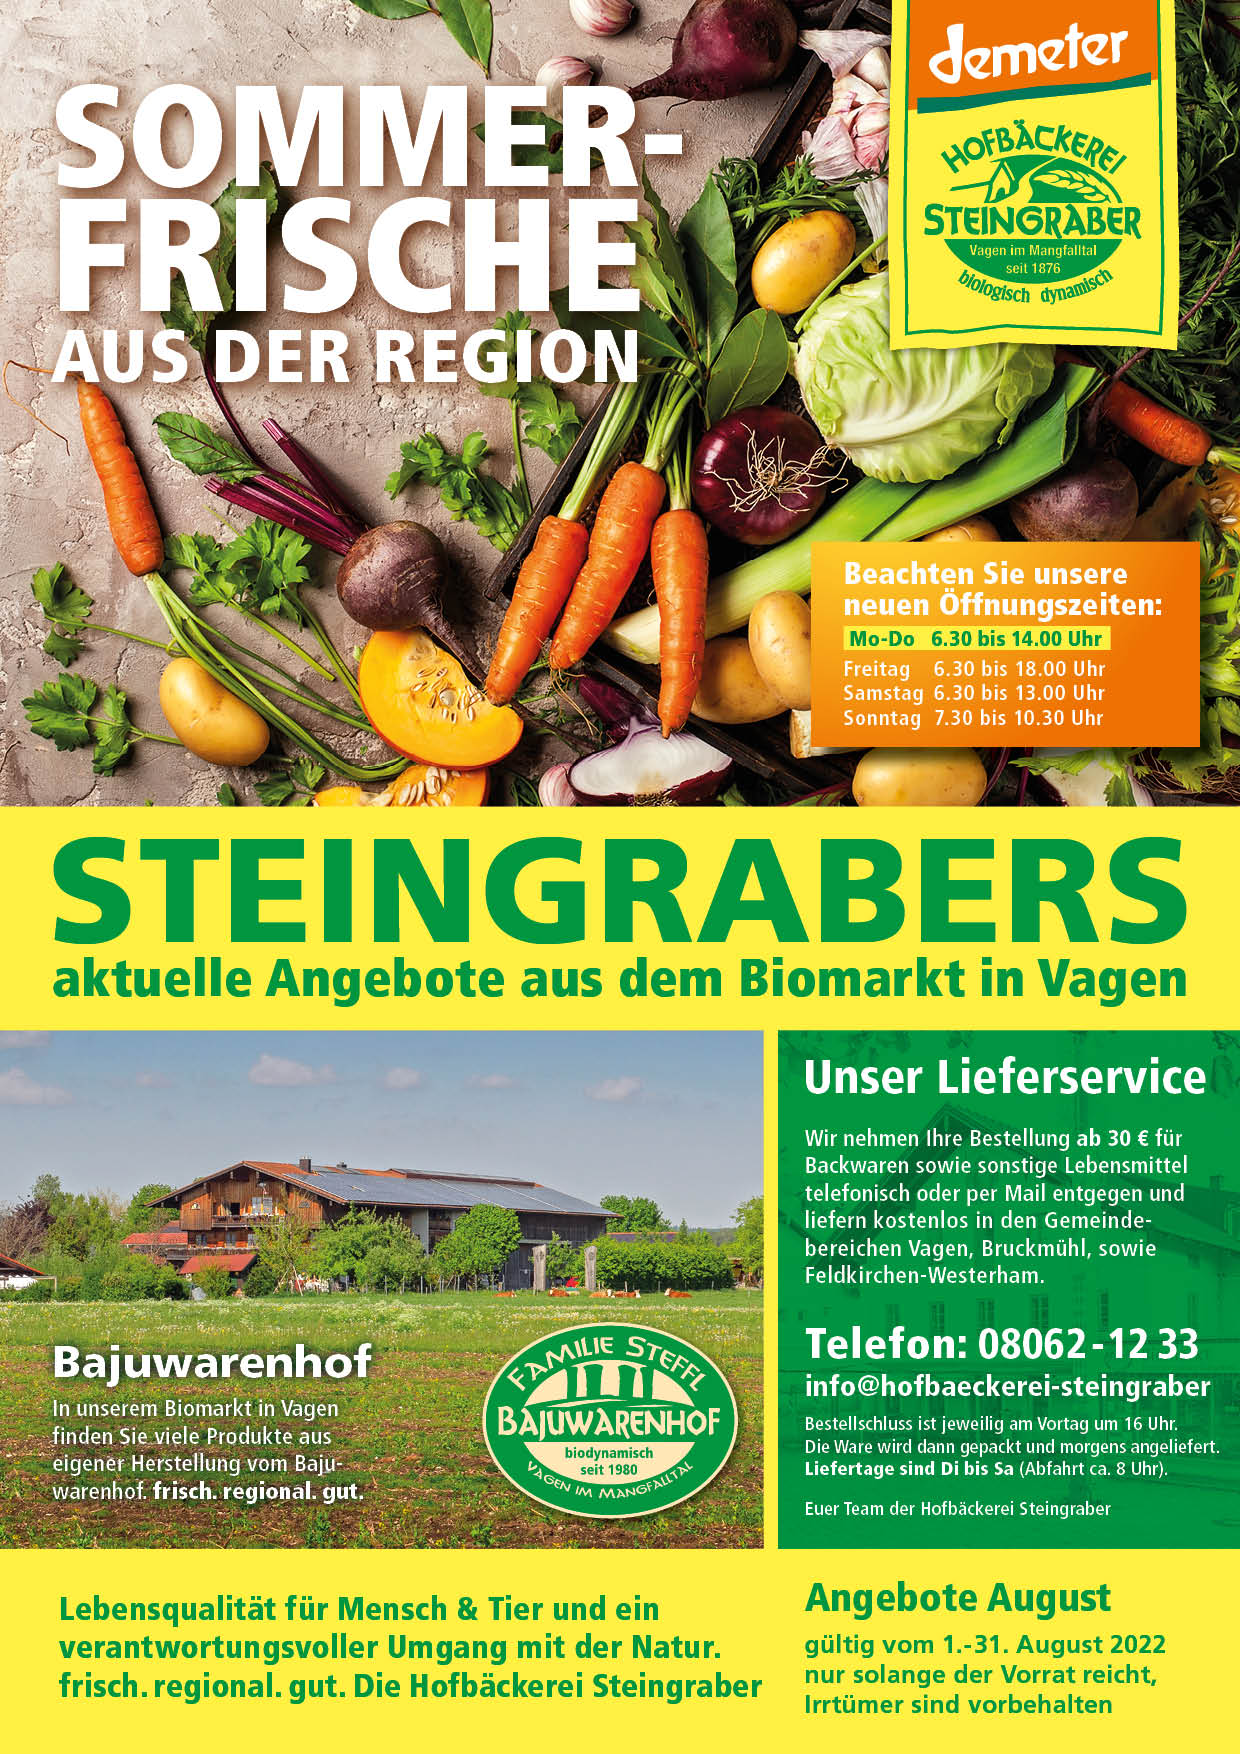 Steingraber Angebot A4 August 2022